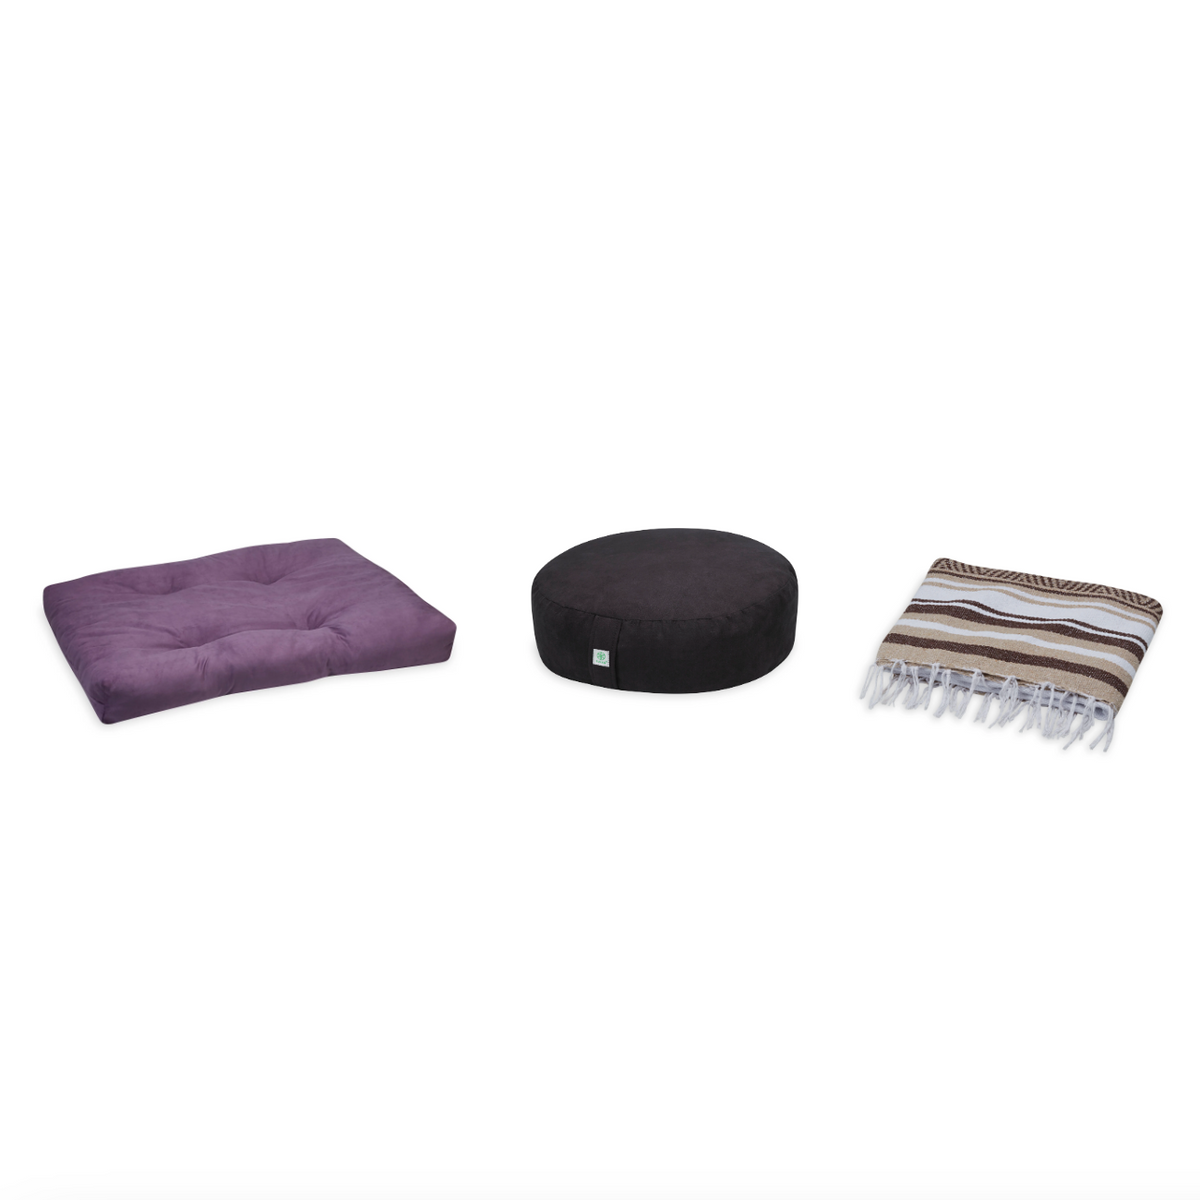 Meditation Bundle - Zabuton (Purple), Zafu (Black), Blanket (Tan/Brown)